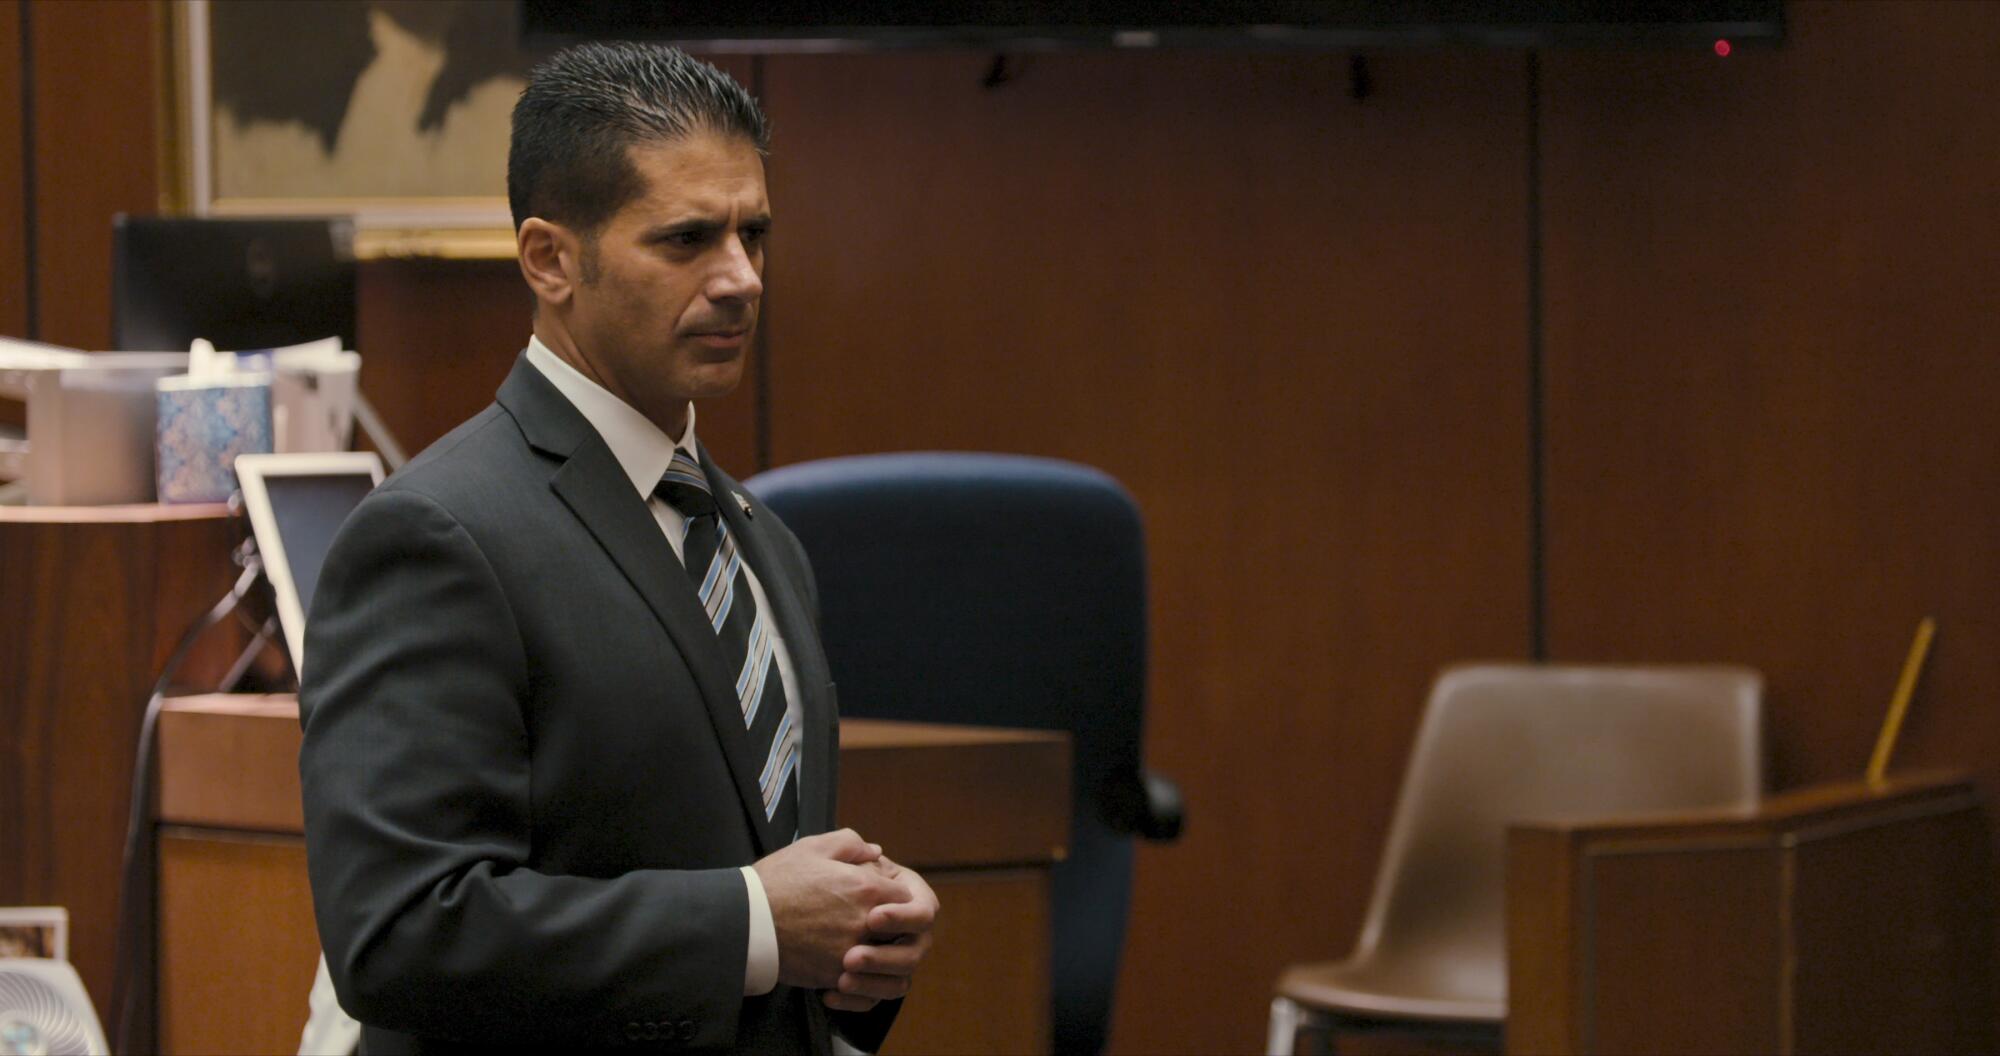 Deputy Dist. Atty. Jon Hatami is shown in court in the Netflix series on child victim Gabriel Fernandez.